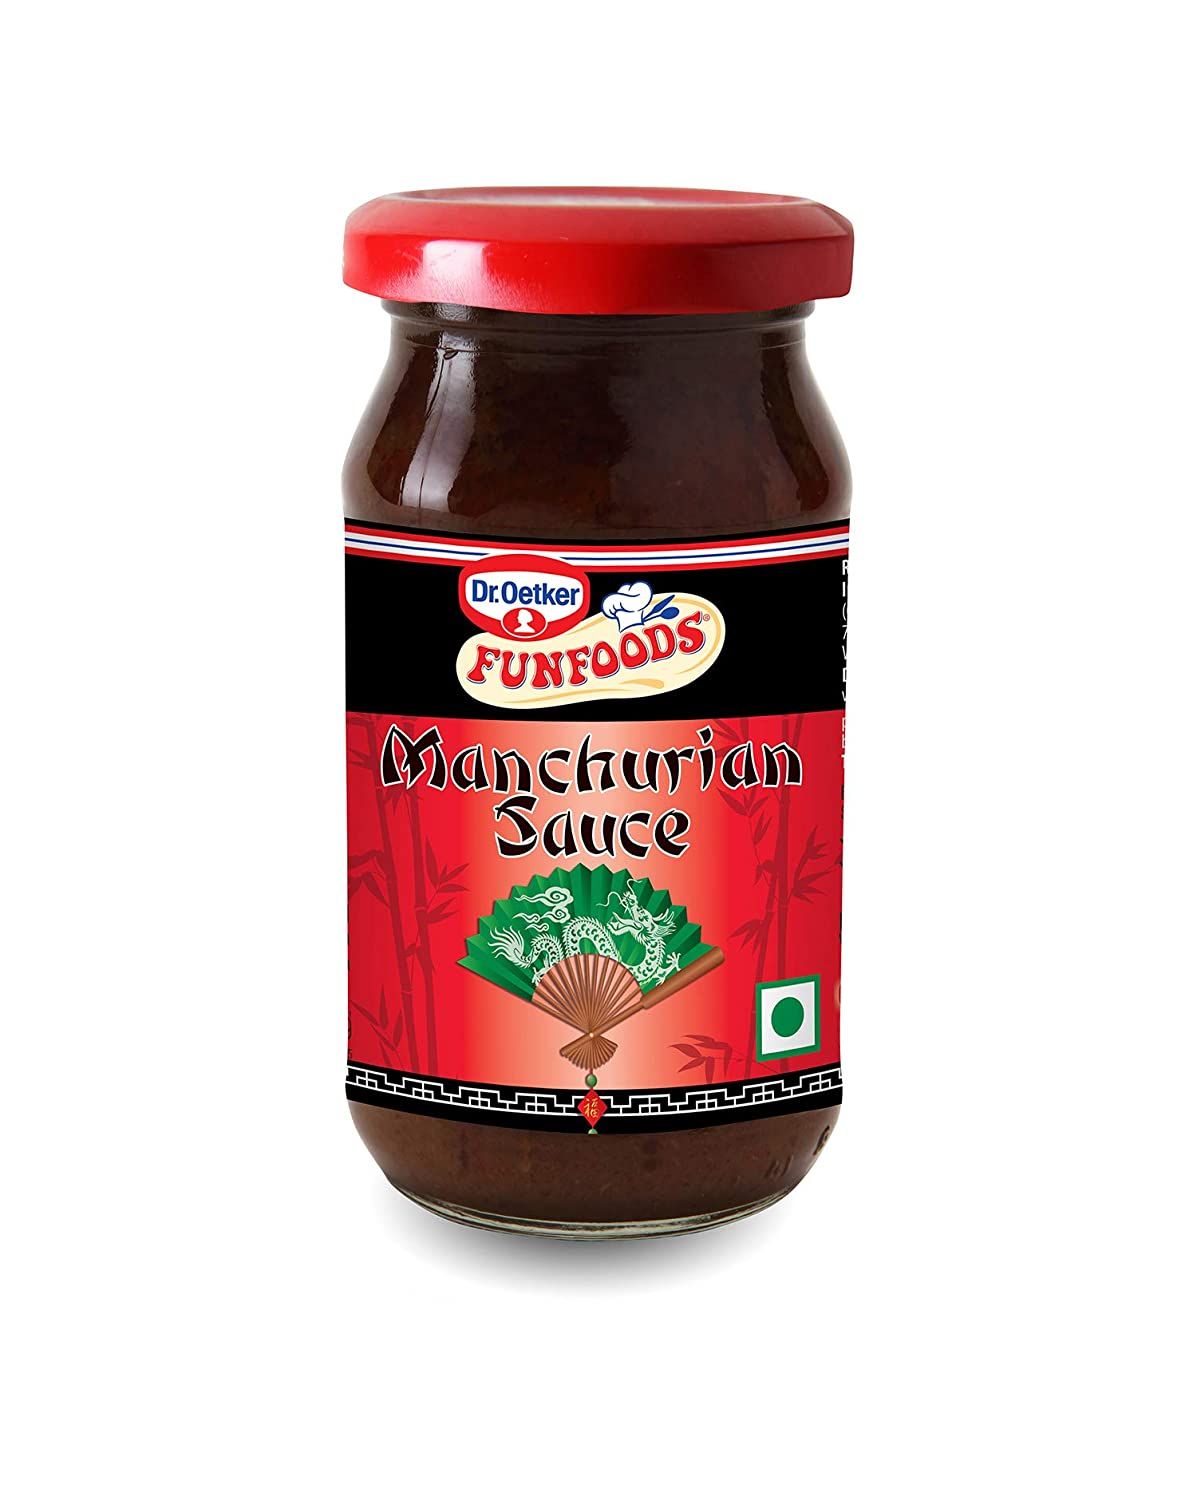 Dr Oetker Manchurian Sauce Image